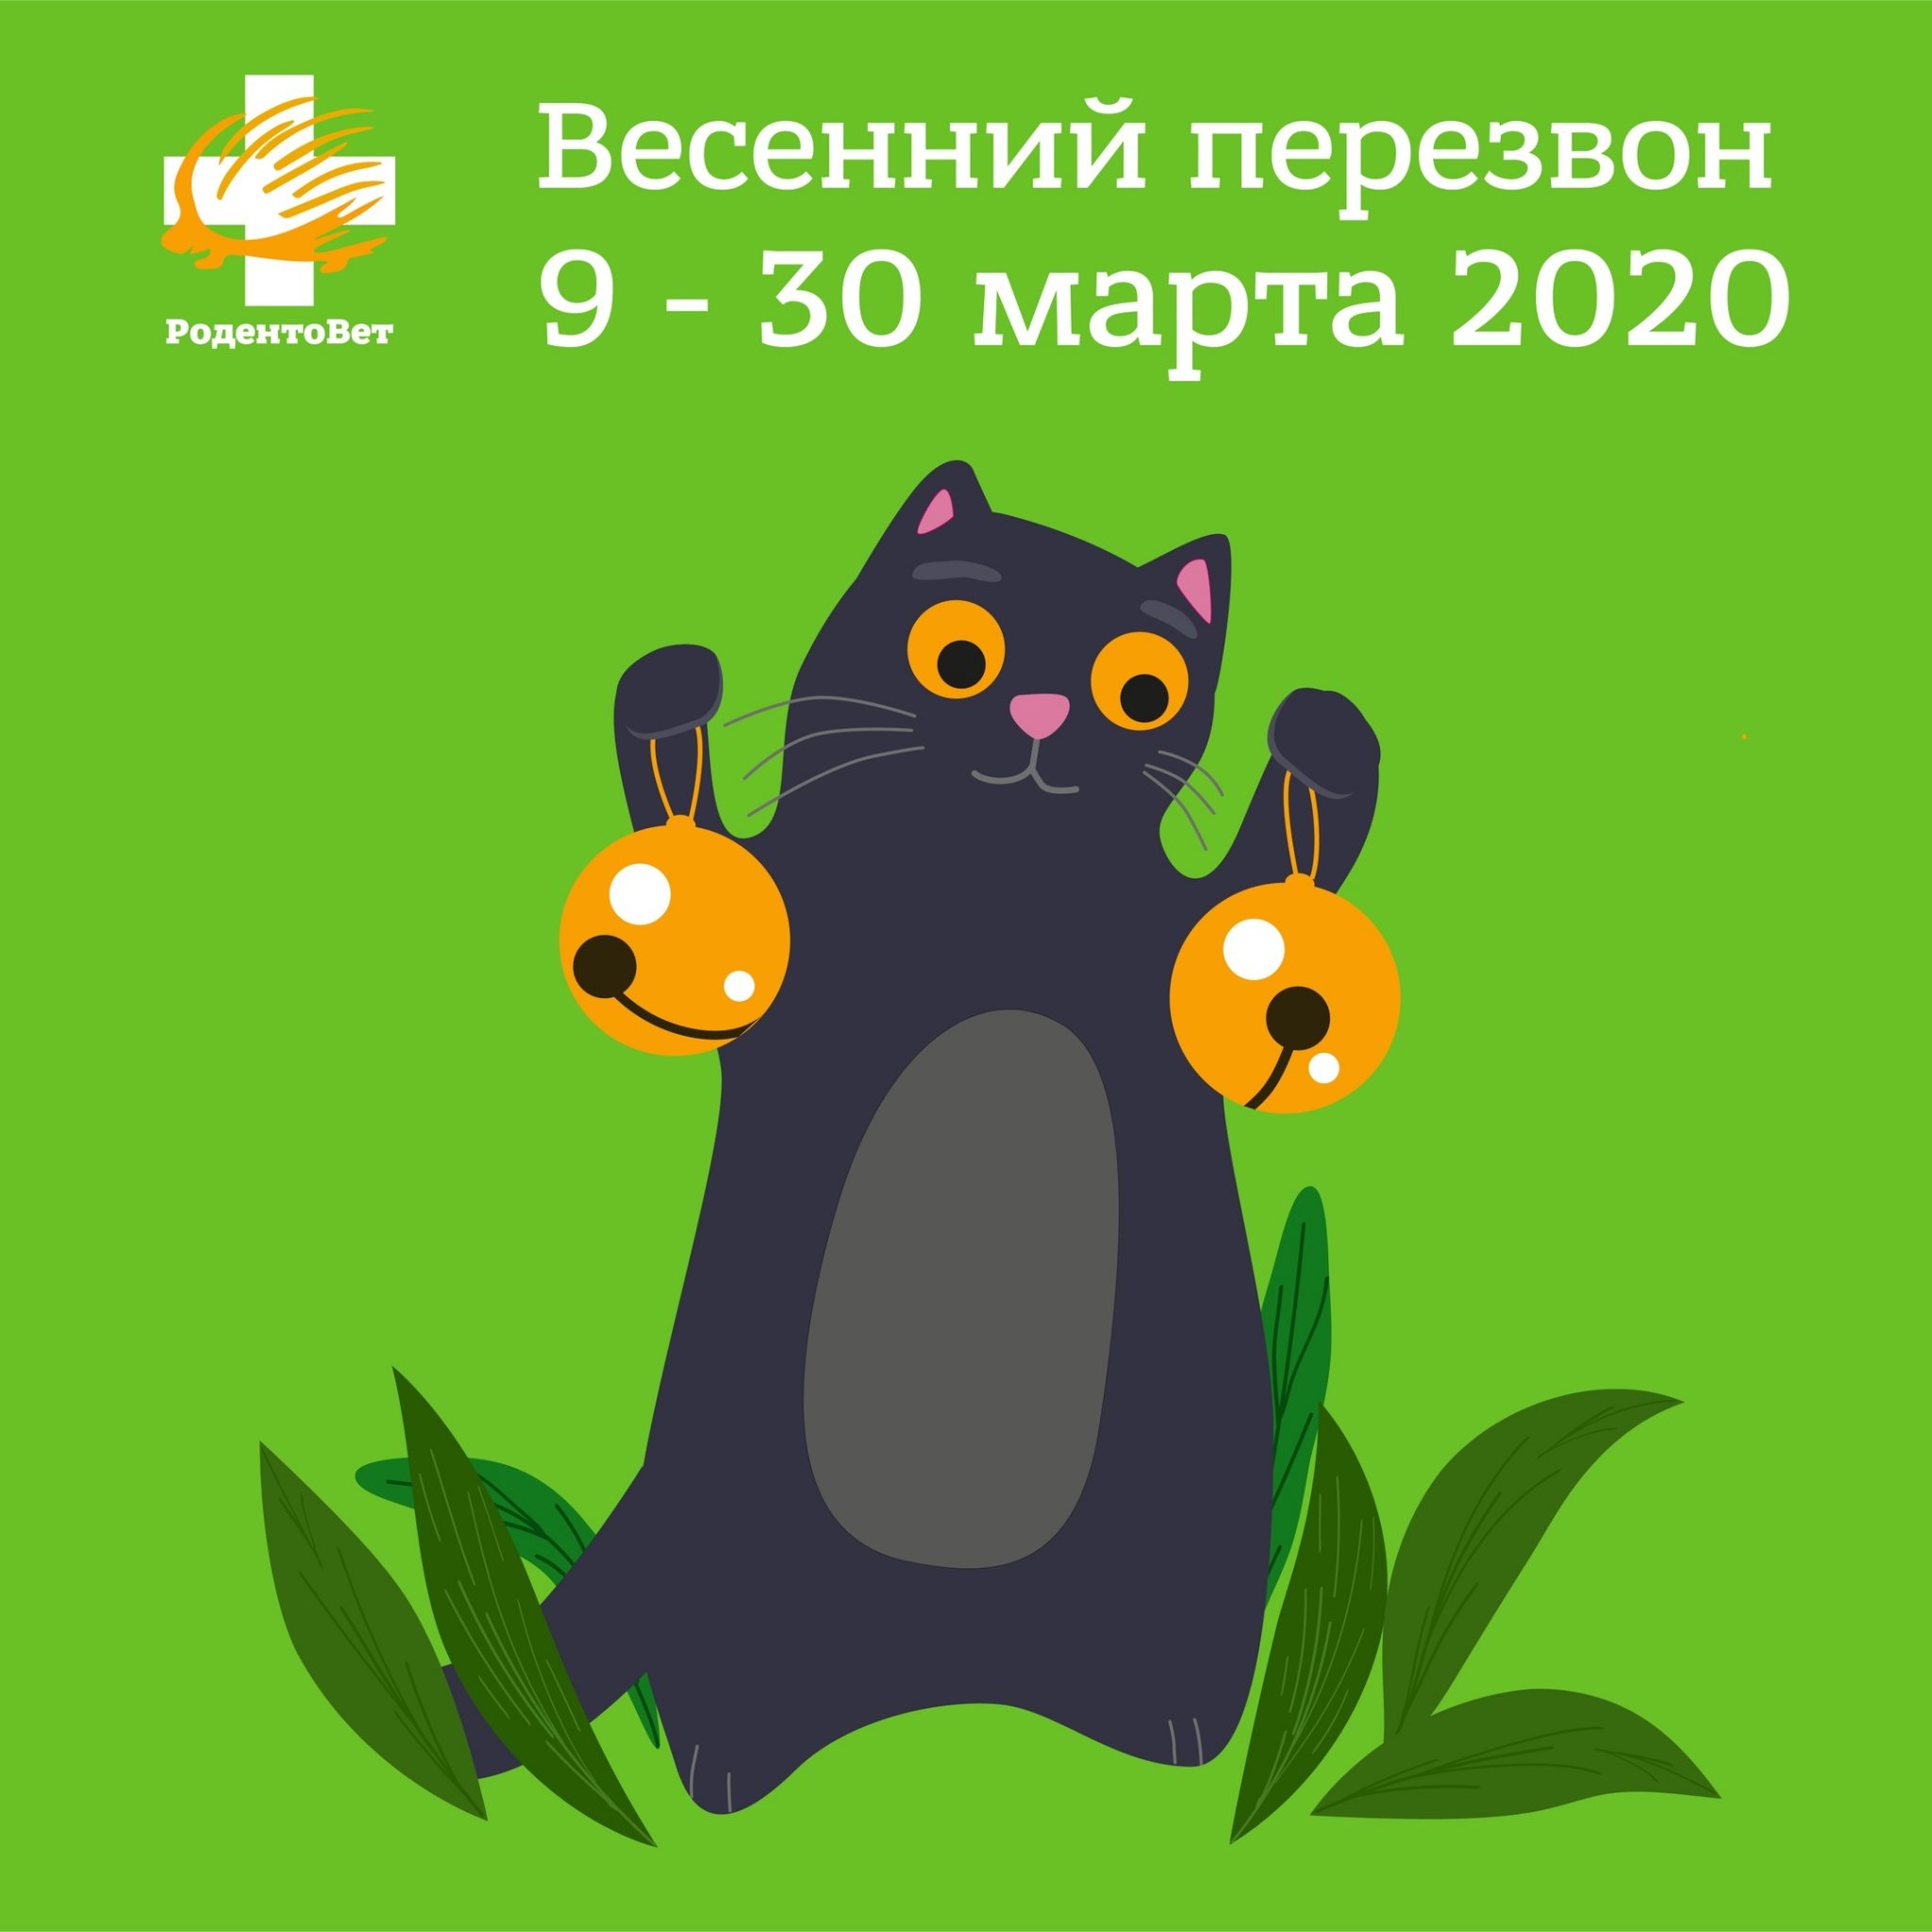 ВЕСЕННИЙ ПЕРЕЗВОН 2020